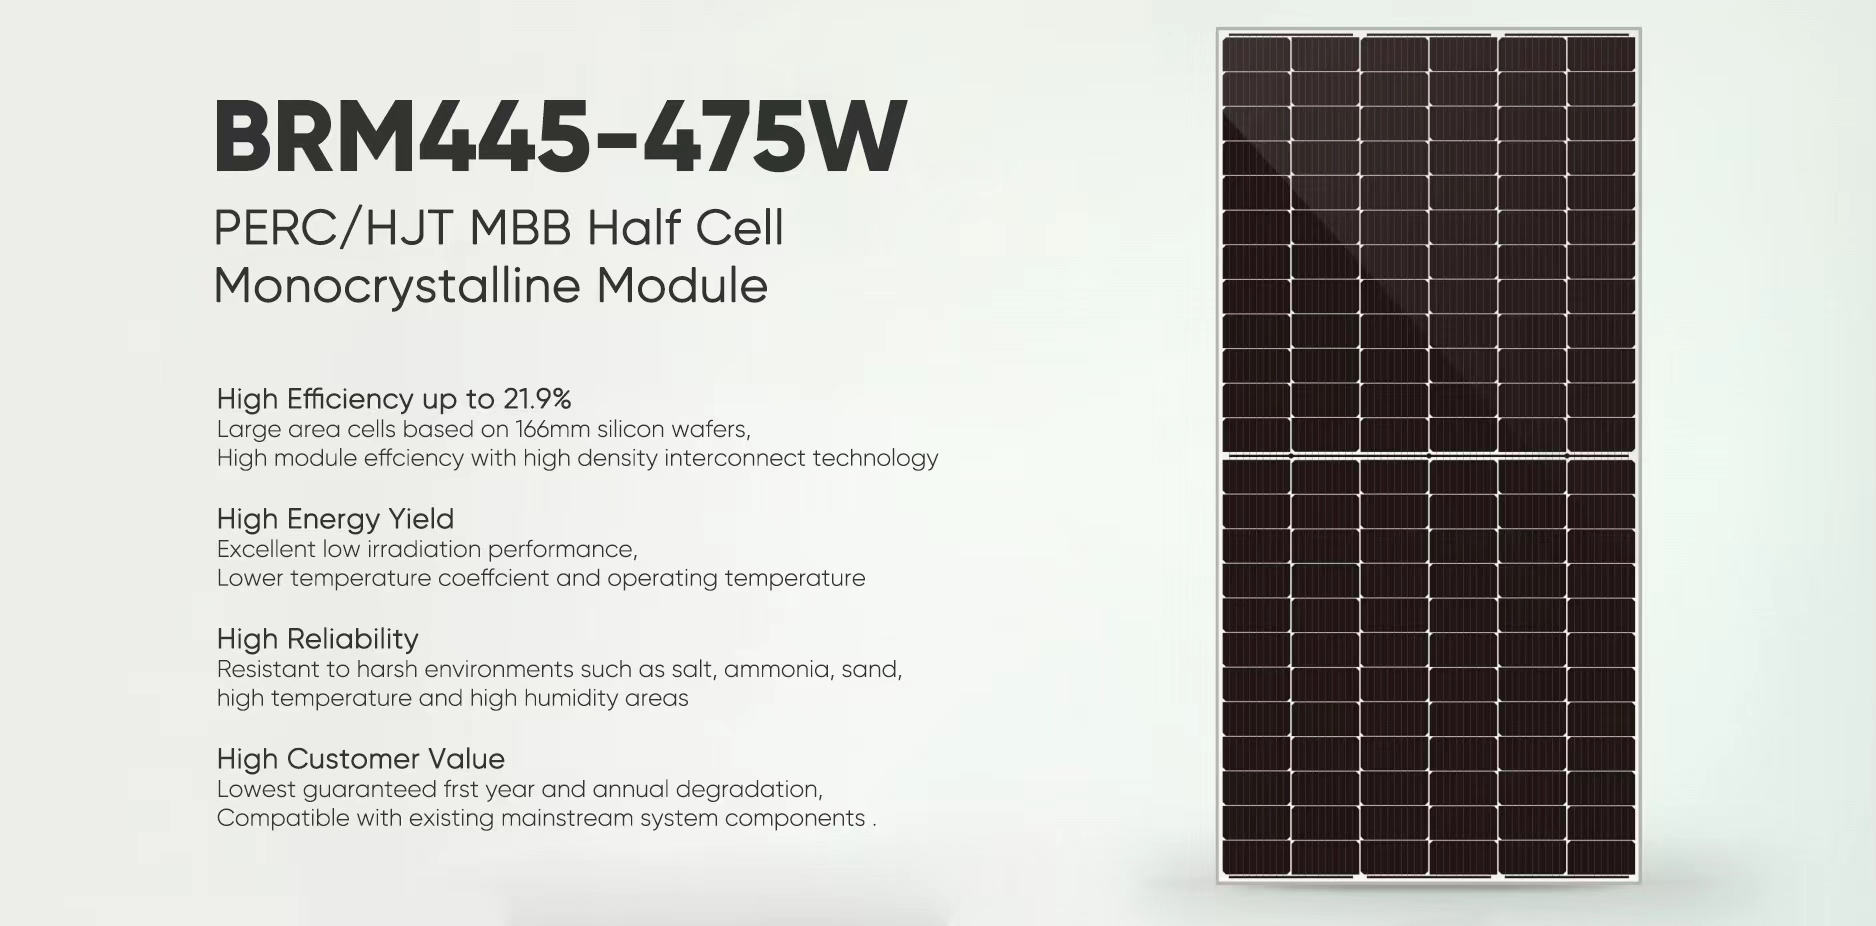 Pôster do painel solar 445W-475W